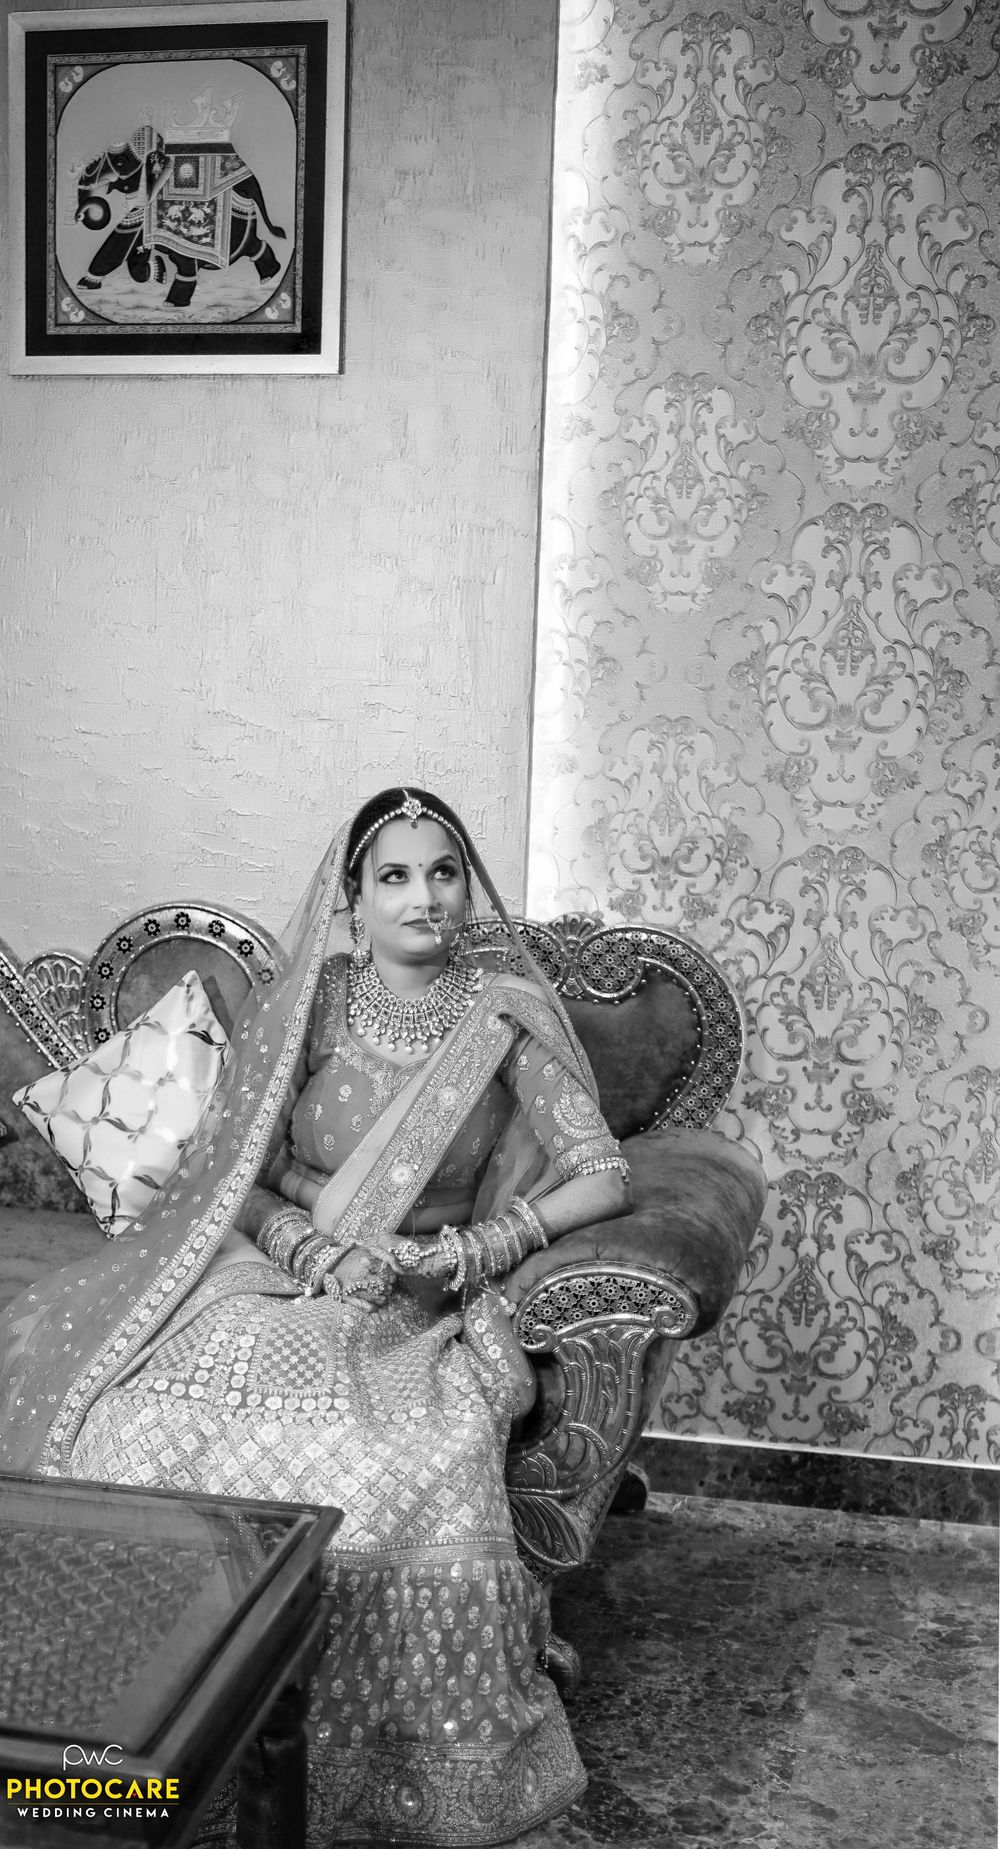 Photo From Surbhi Prateek - By Wedding Cinema